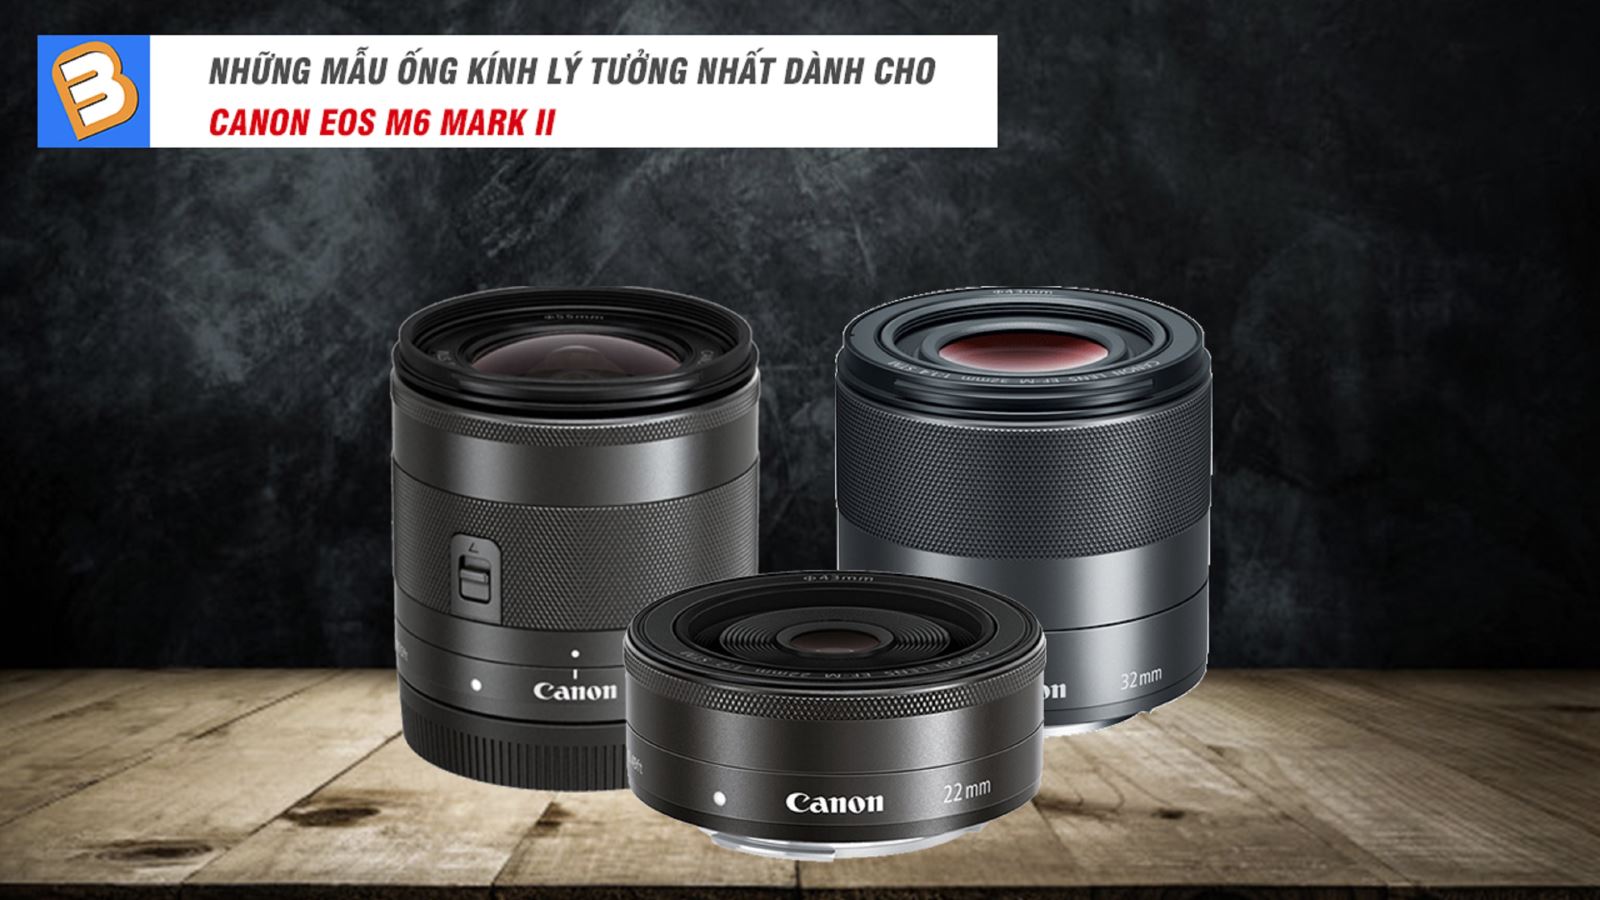 Những mẫu ống kính lý tưởng nhất dành cho Canon EOS M6 Mark II